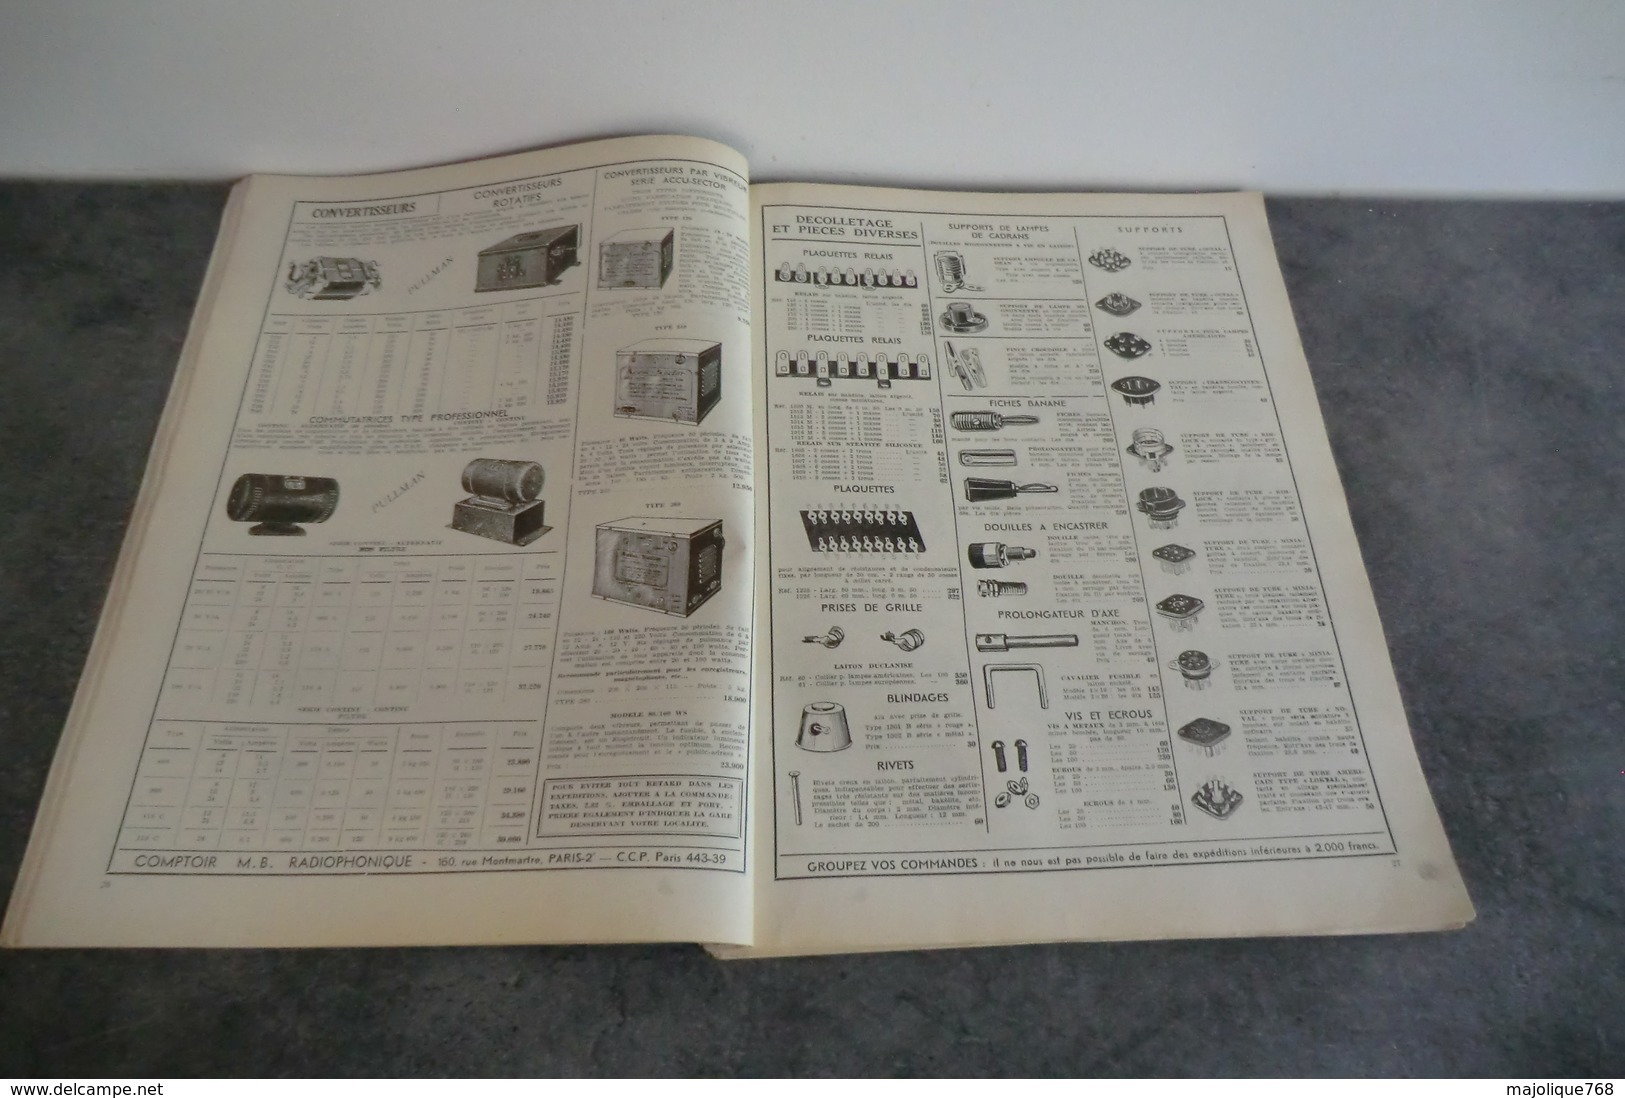 Comptoir M B Radiophonique Présente Son Nouveau Catalogue Générale - Année 1950 - La Couverture Au Verso Se Détache - - Onderdelen